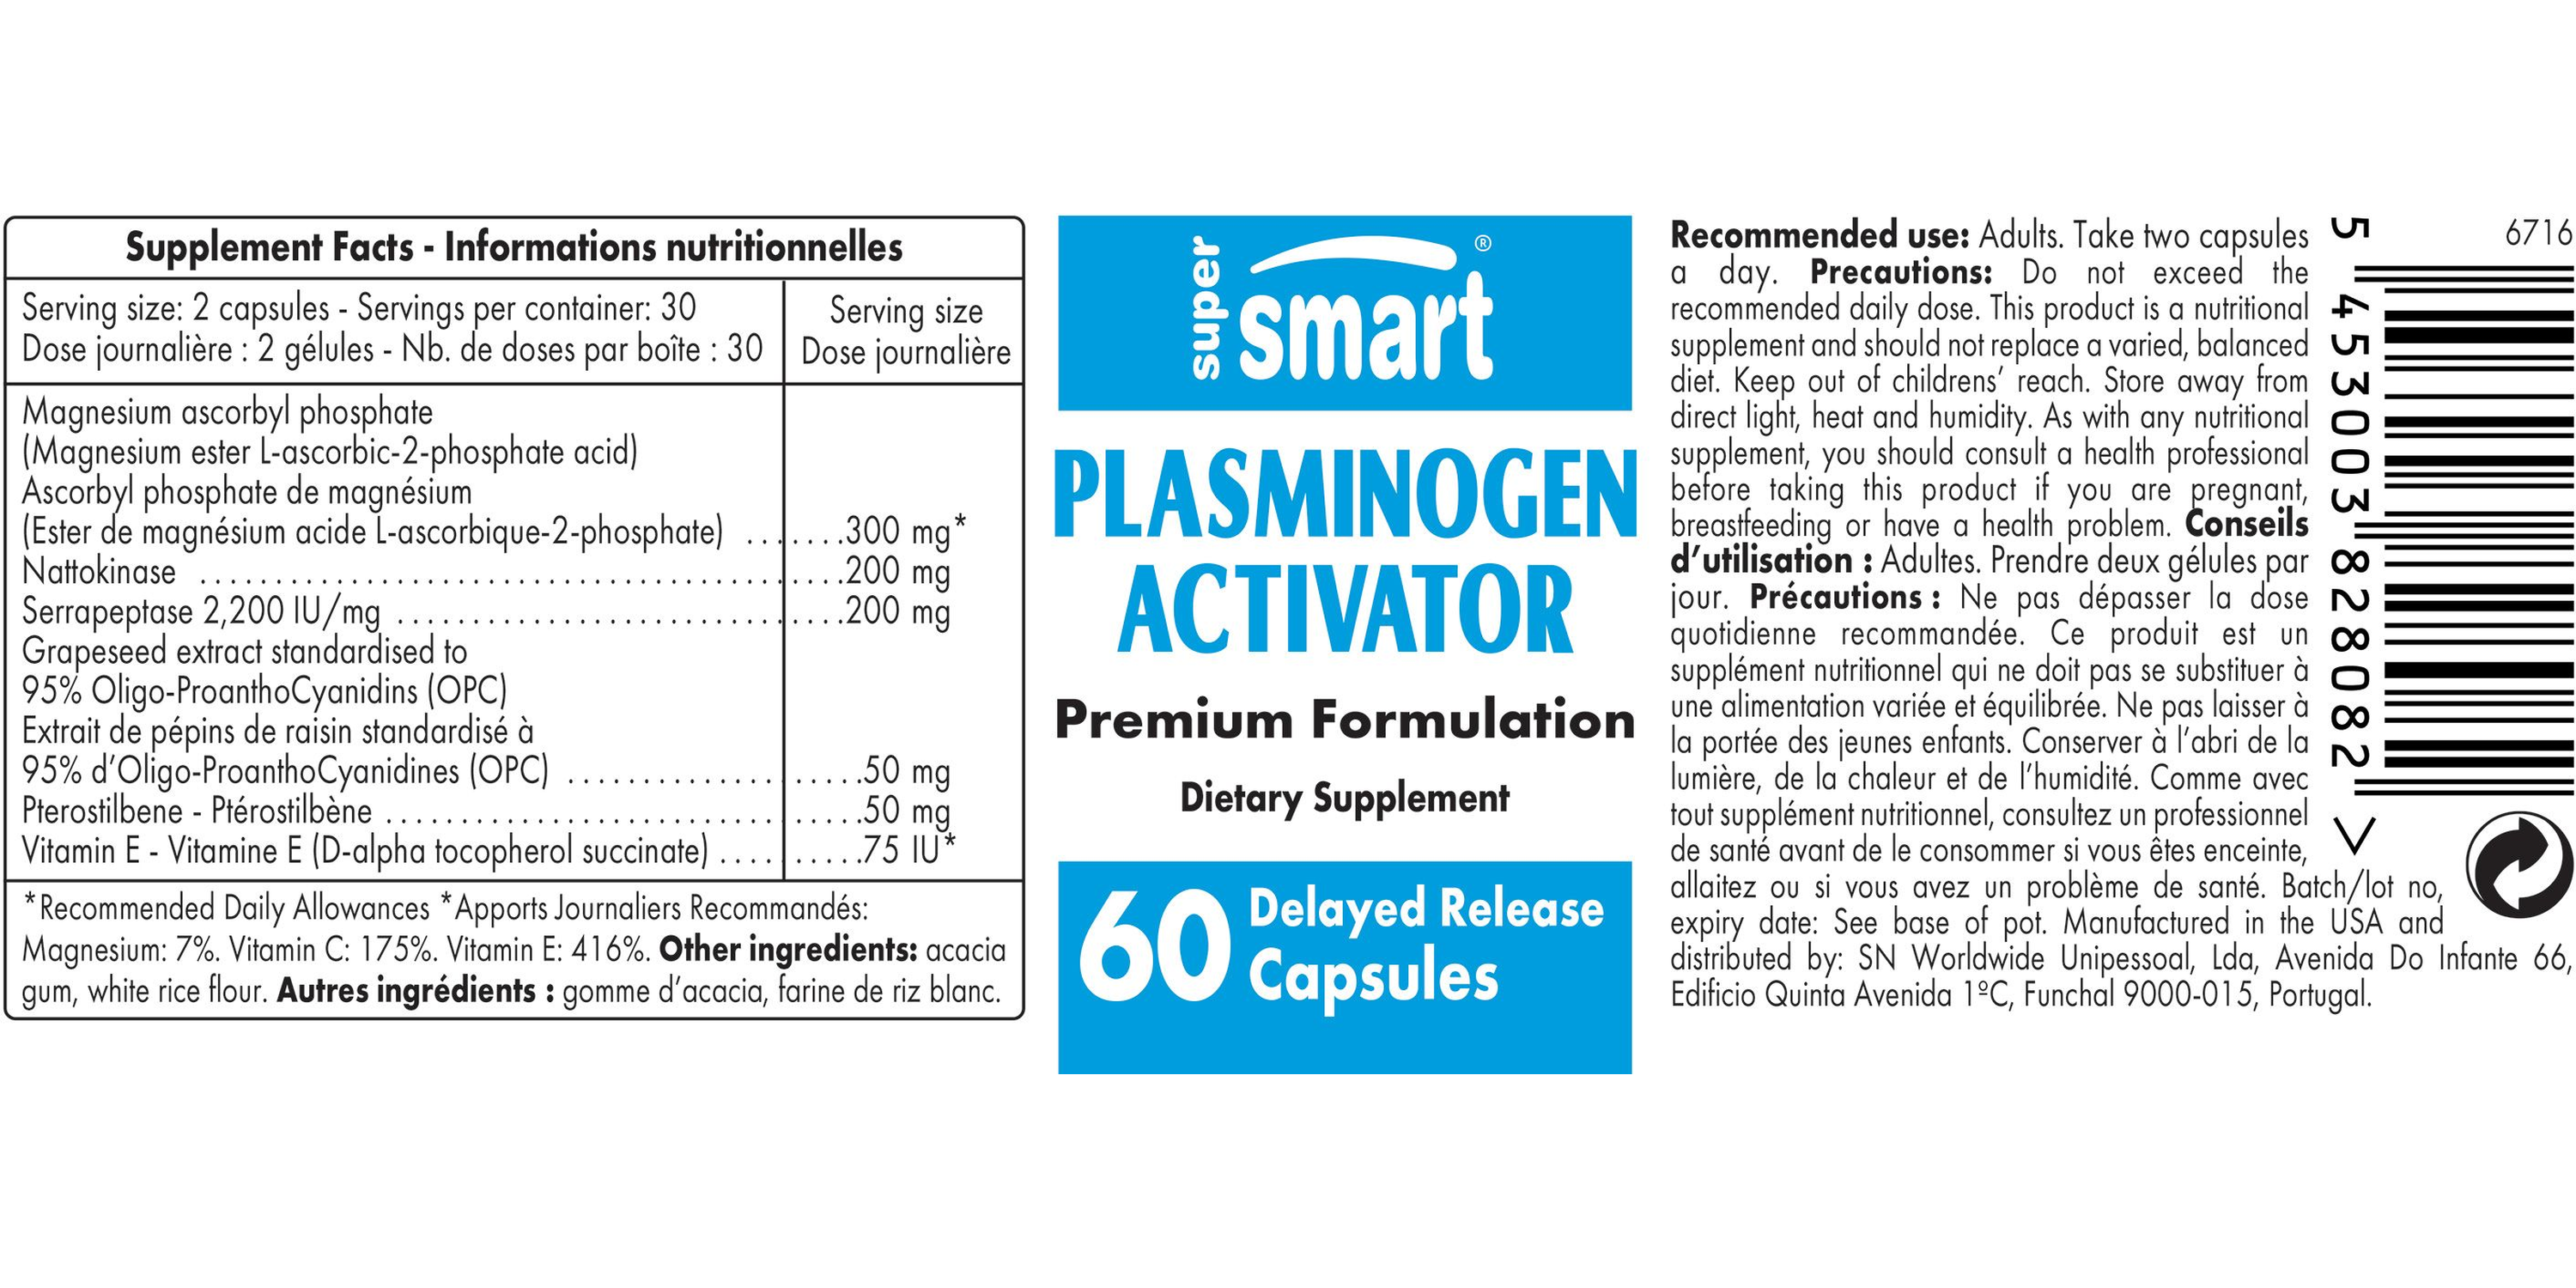 Plasminogen Activator